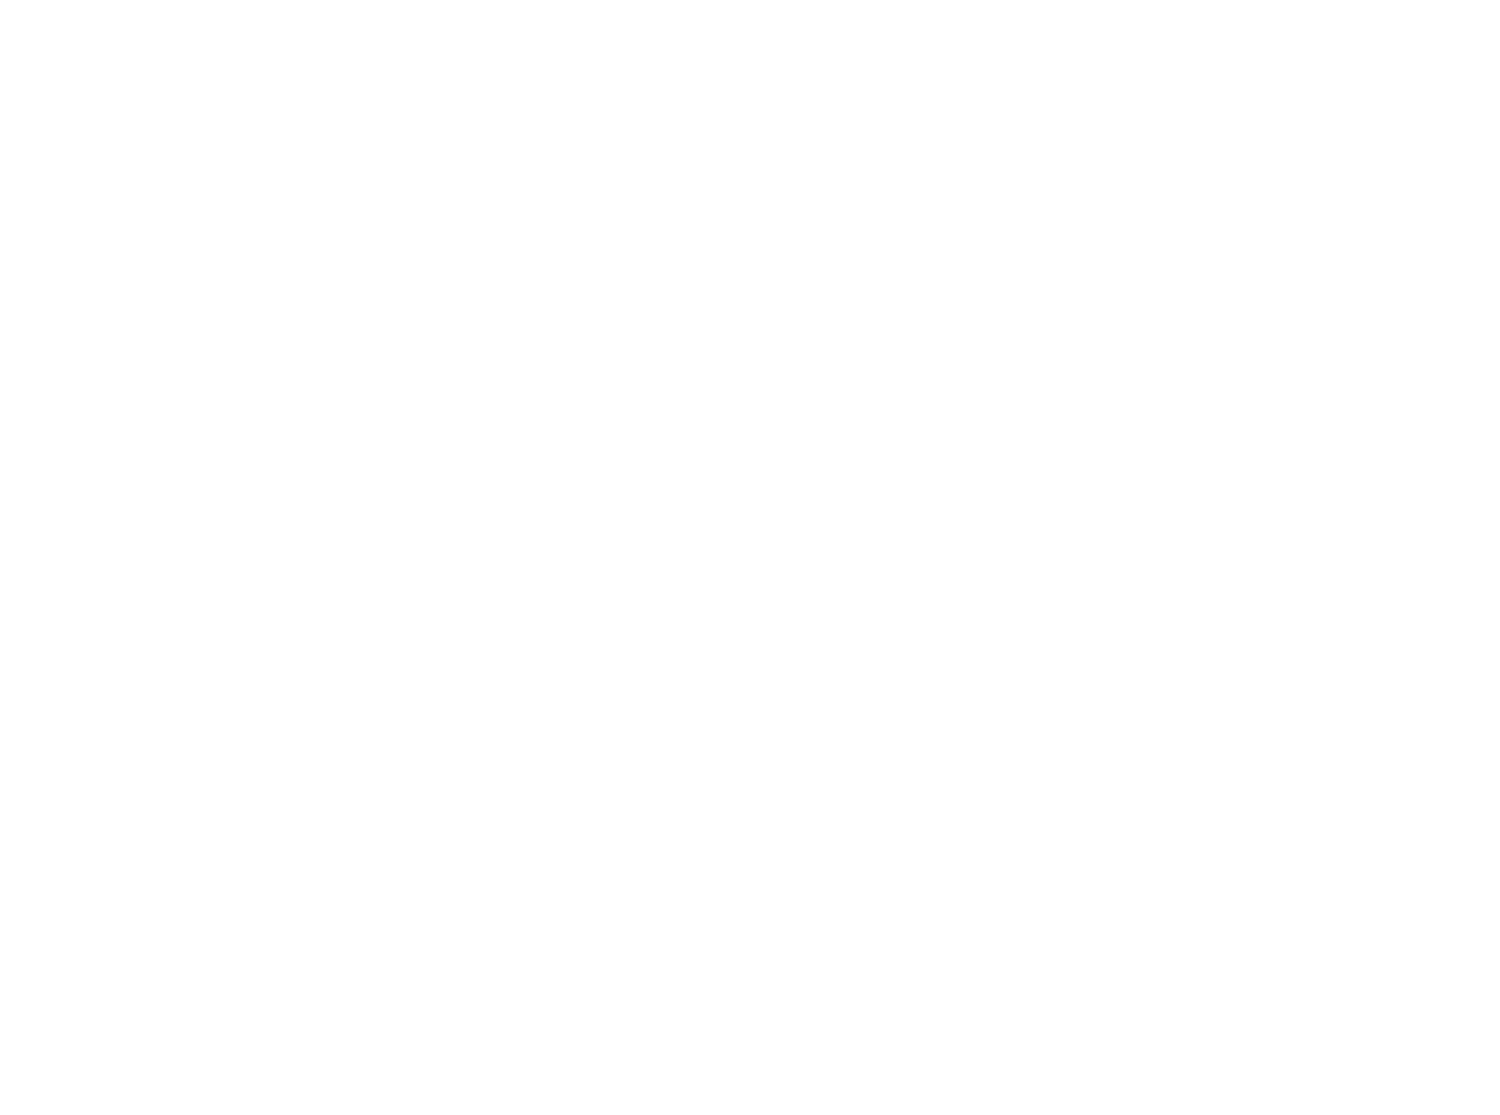 freelancer.com logo for dark backgrounds (transparent PNG)